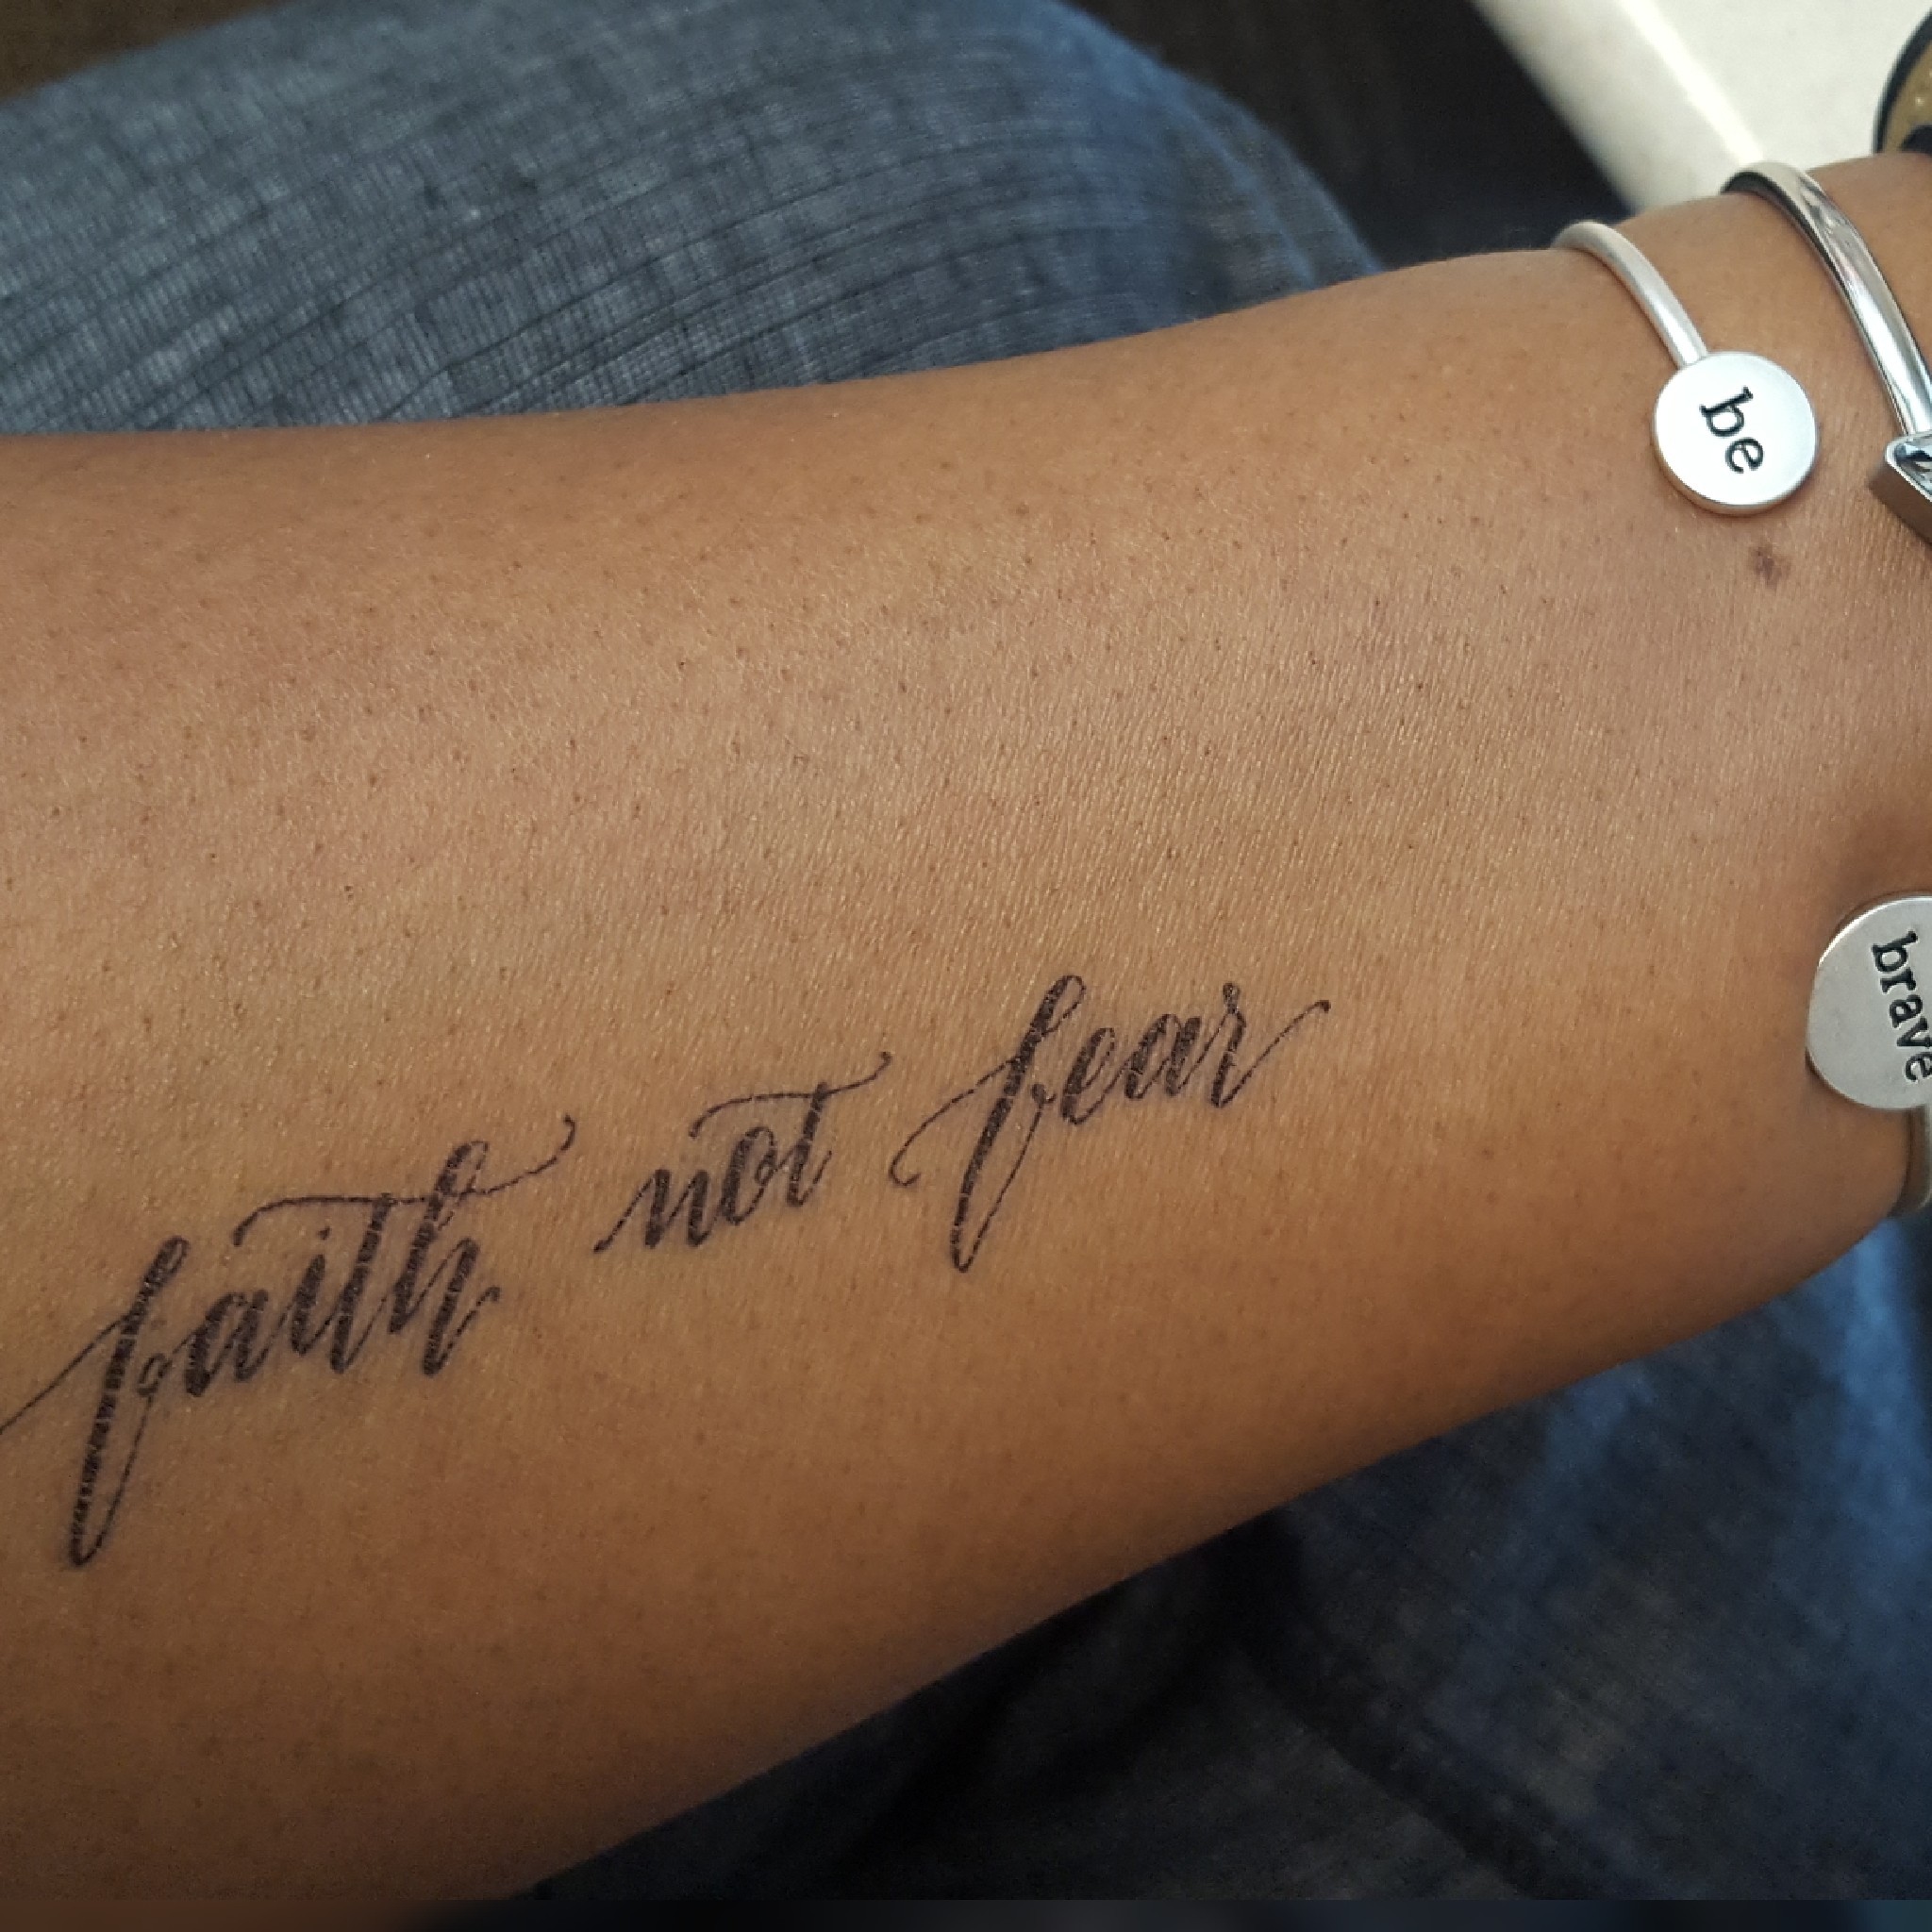 Faith-Not-Fear-Armed-with-Truth